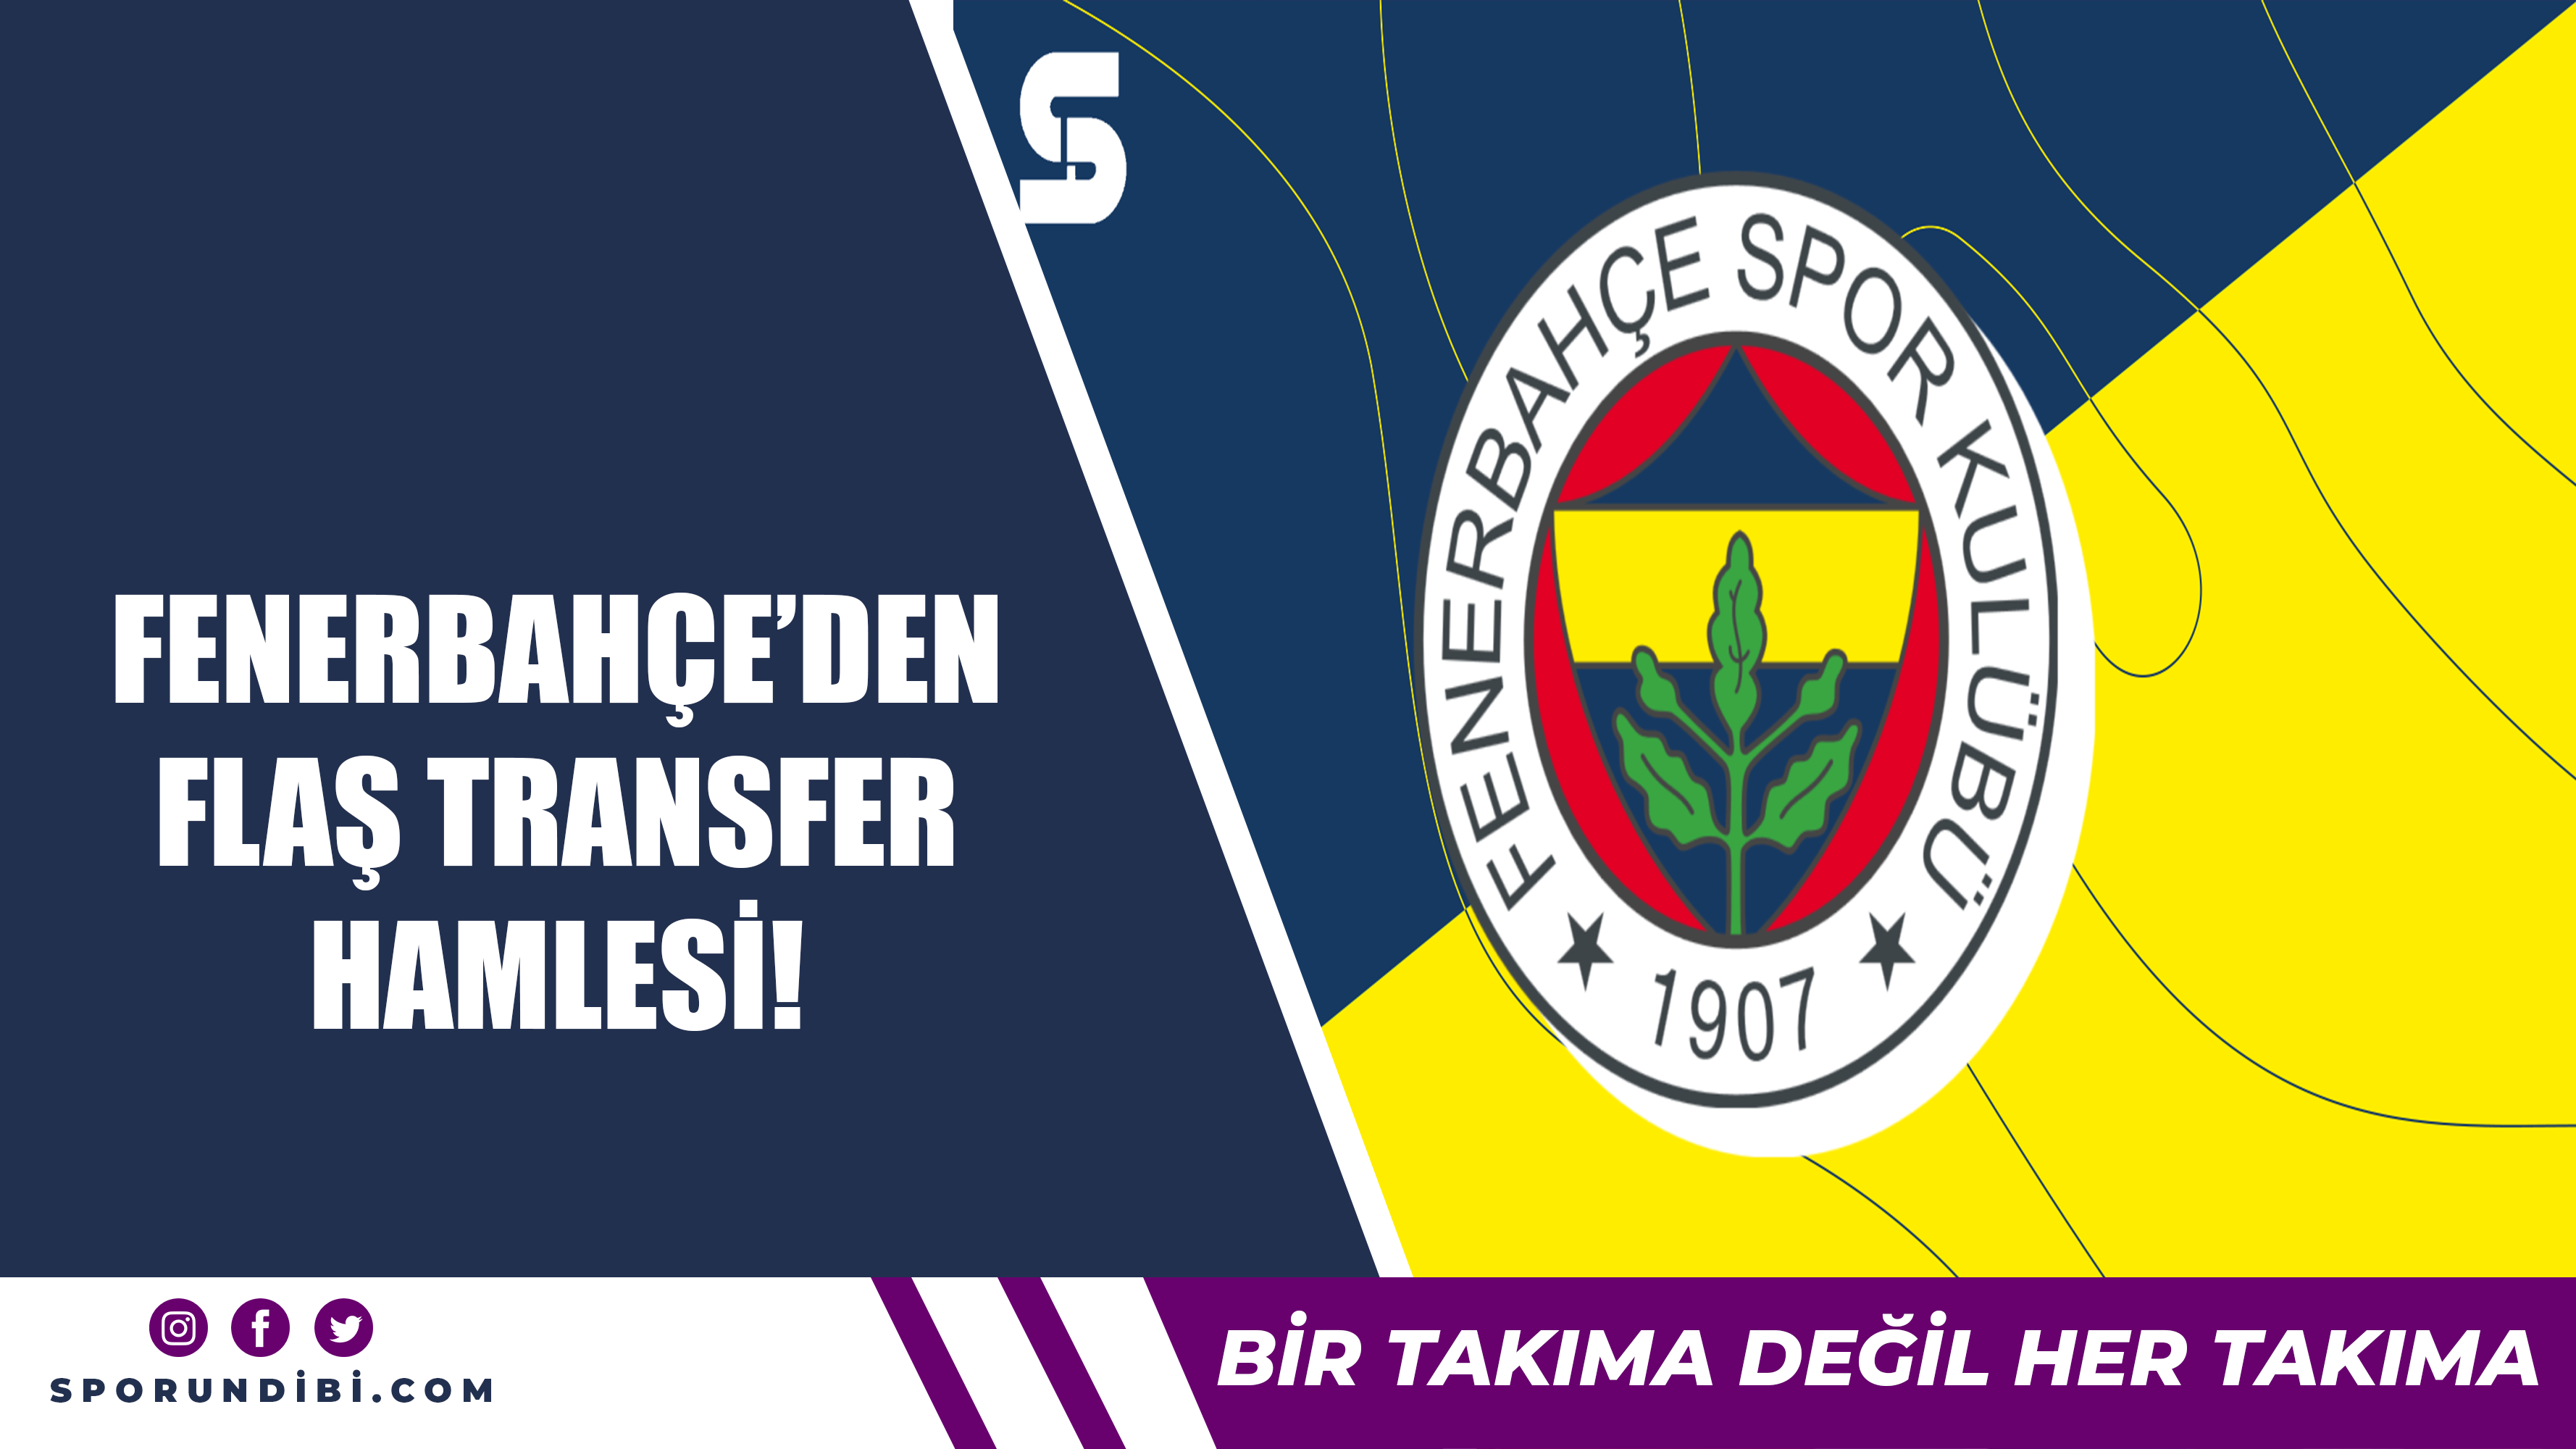 Fenerbahçe'den flaş transfer hamlesi!